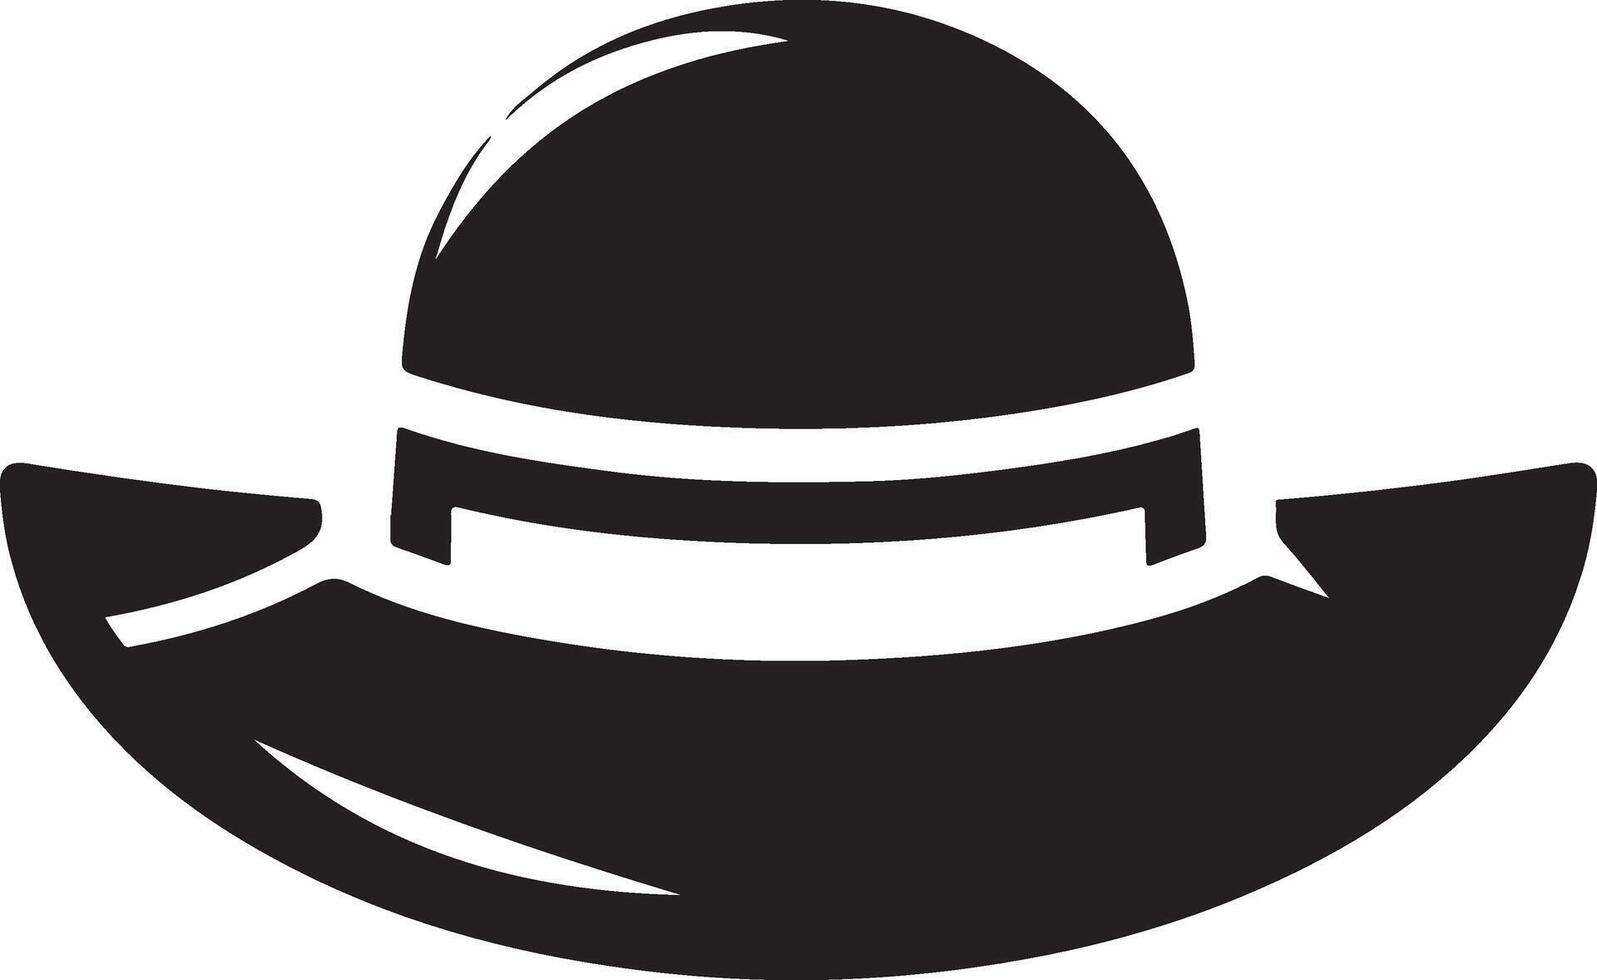 minimal Retro Hat icon, clipart, symbol, black color silhouette 27 vector